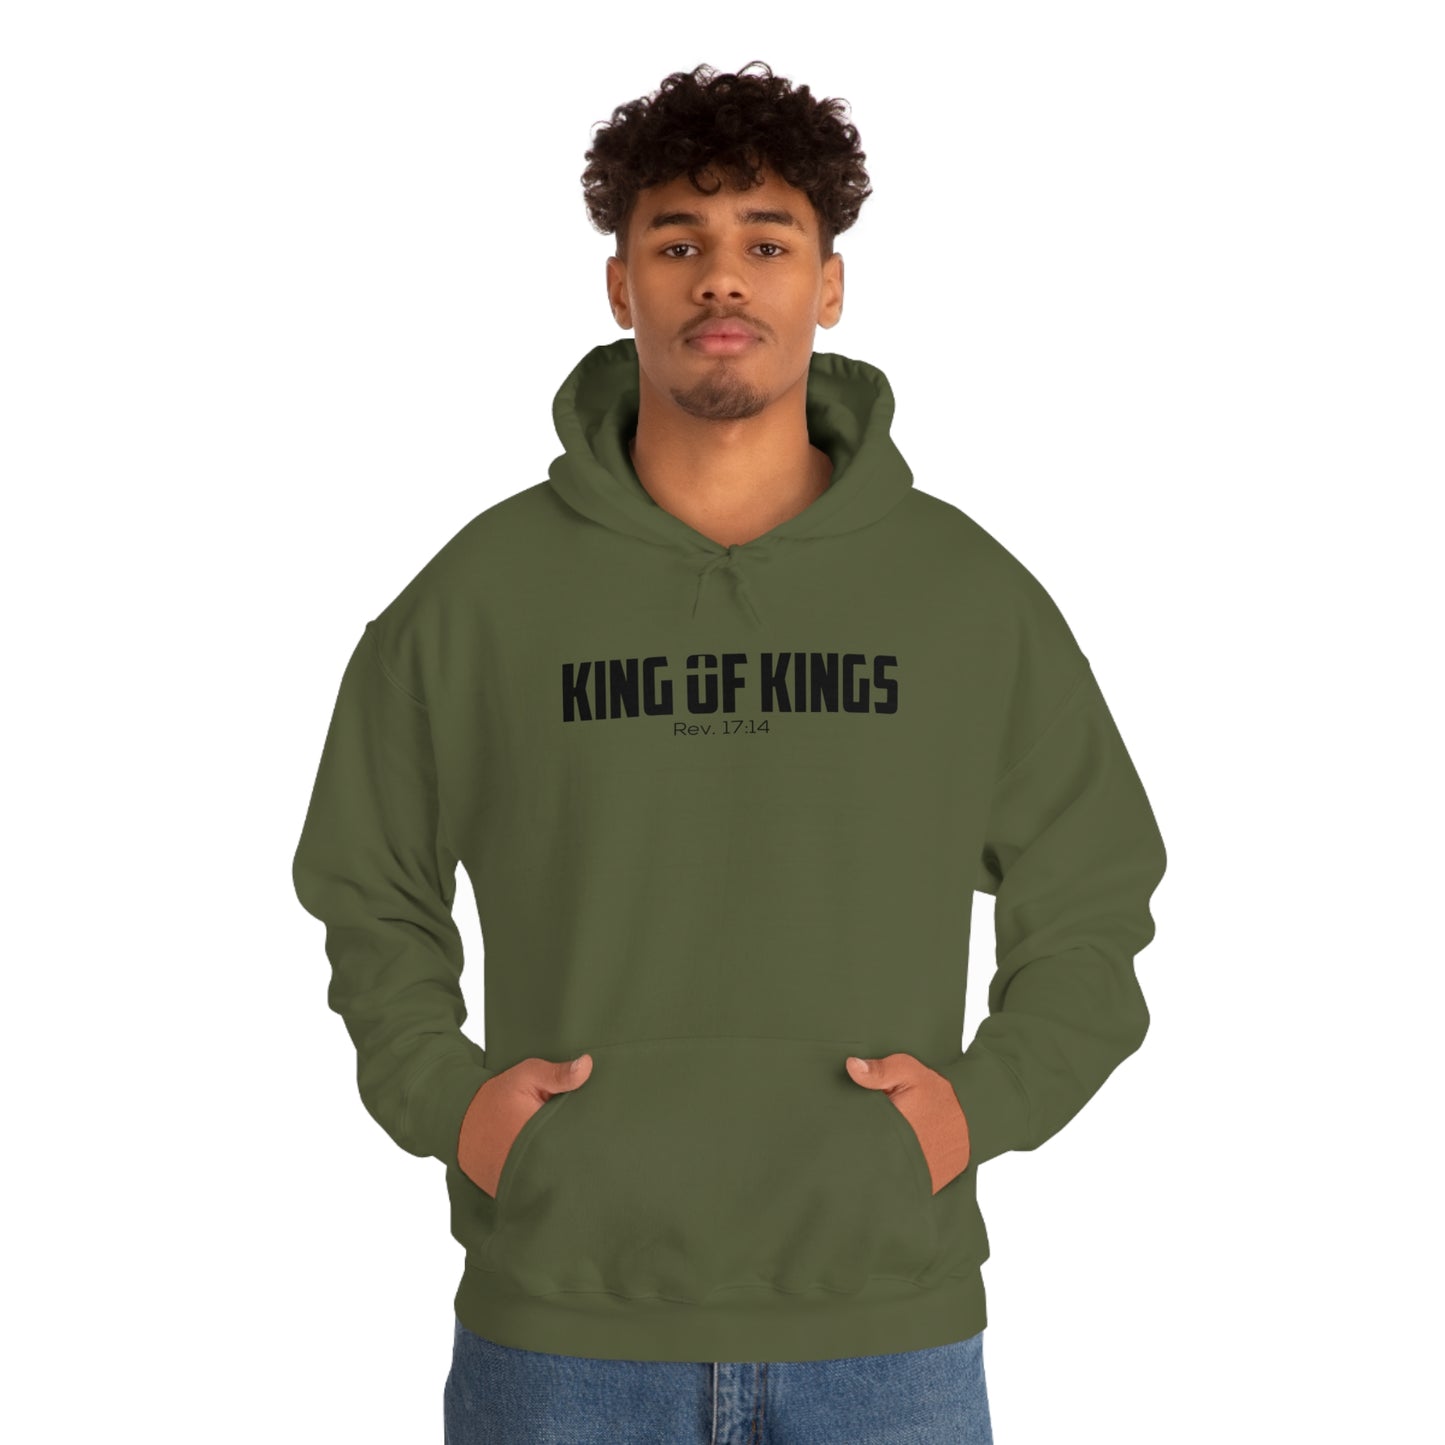 King of Kings Hooded Sweatshirt